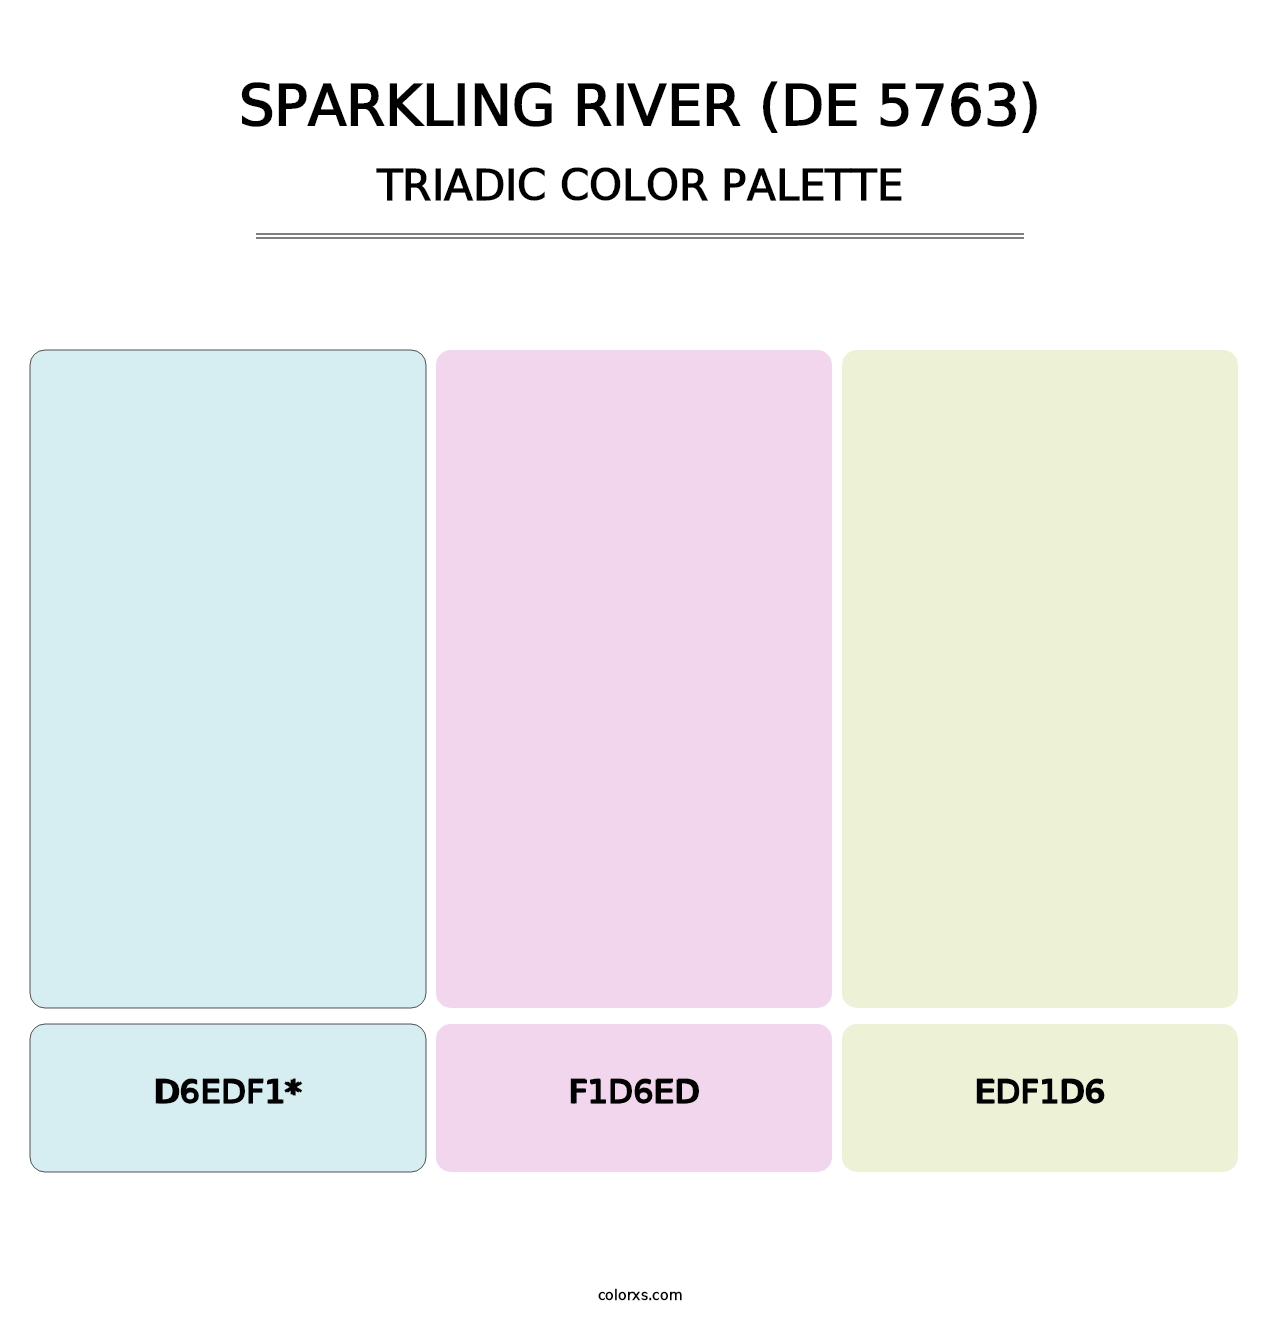 Sparkling River (DE 5763) - Triadic Color Palette